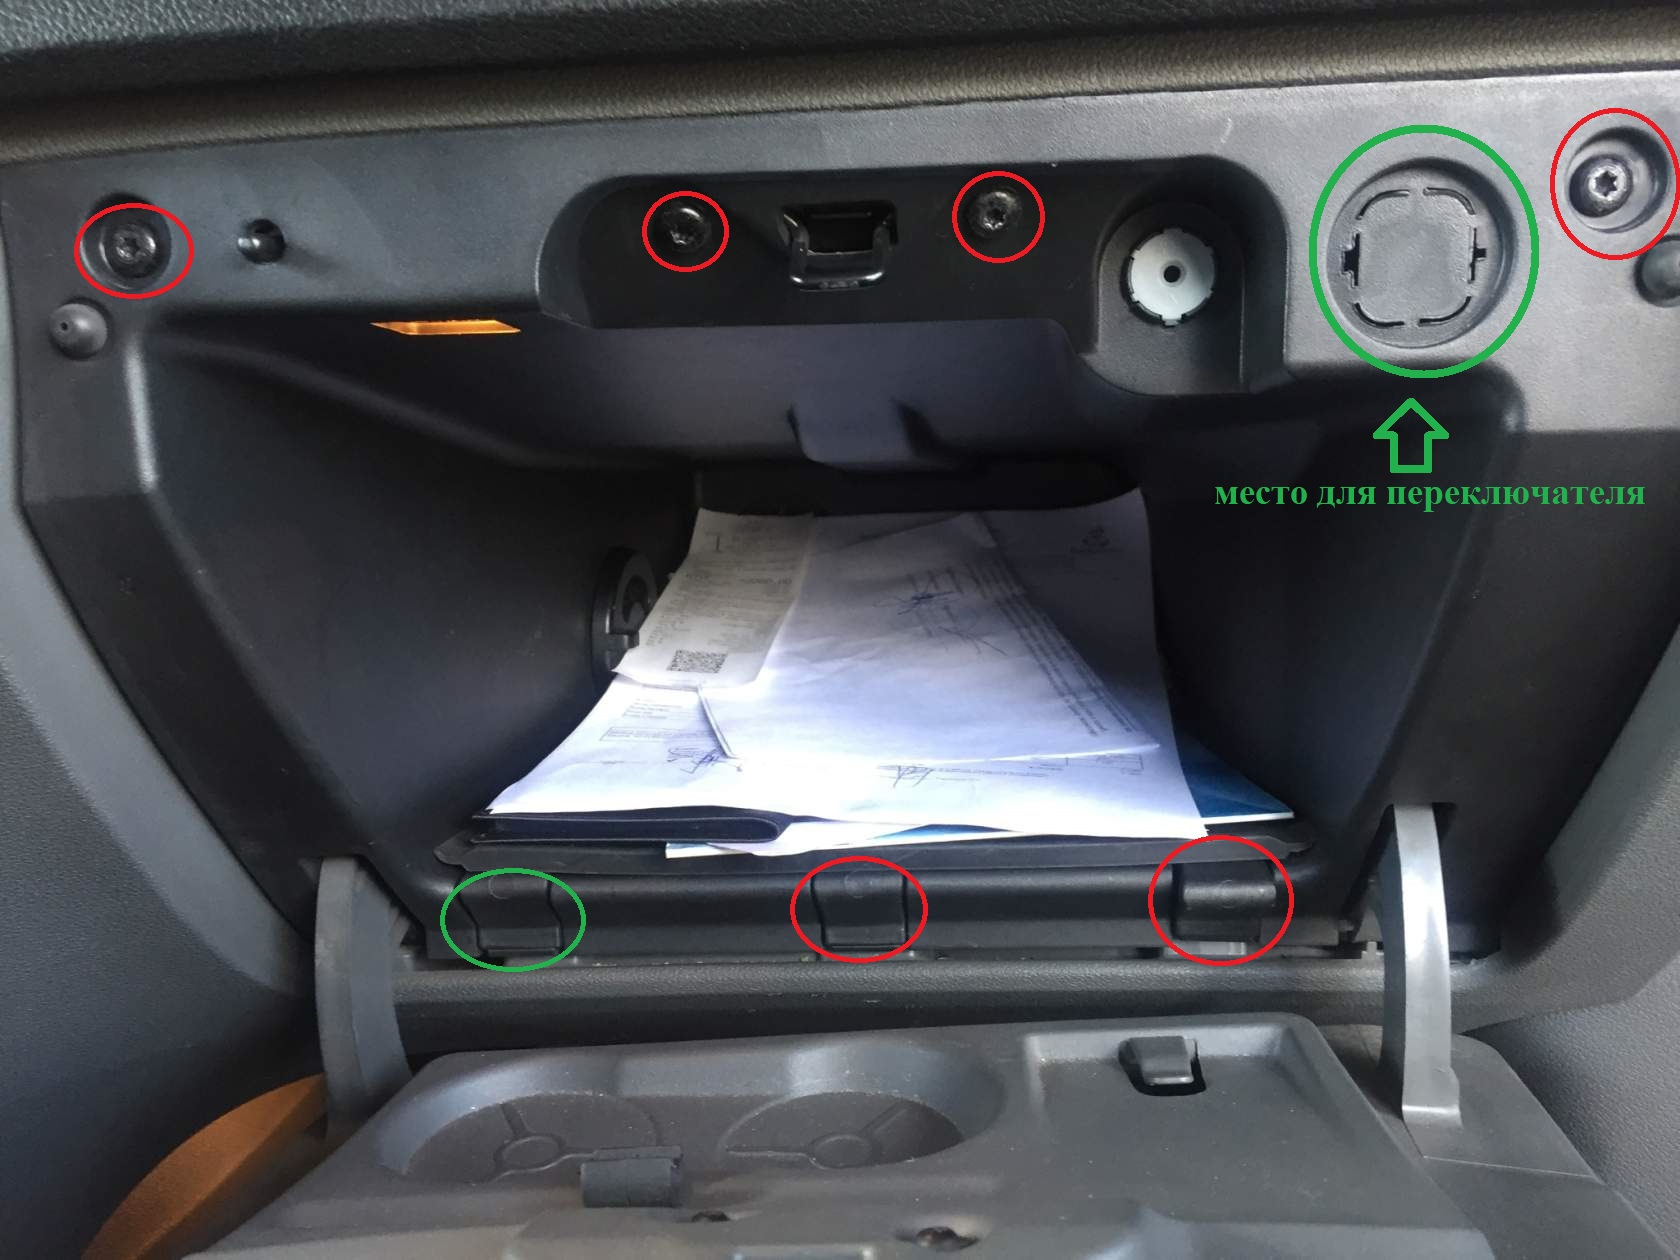 Безопасность форд мондео. Отключения подушки безопасности пассажира Форд фокус 2007 года. Выключатель подушки безопасности Форд фокус 3. Кнопка выключения подушки безопасности пассажира Форд фокус 2. Кнопка отключения подушки безопасности Форд фокус 2.